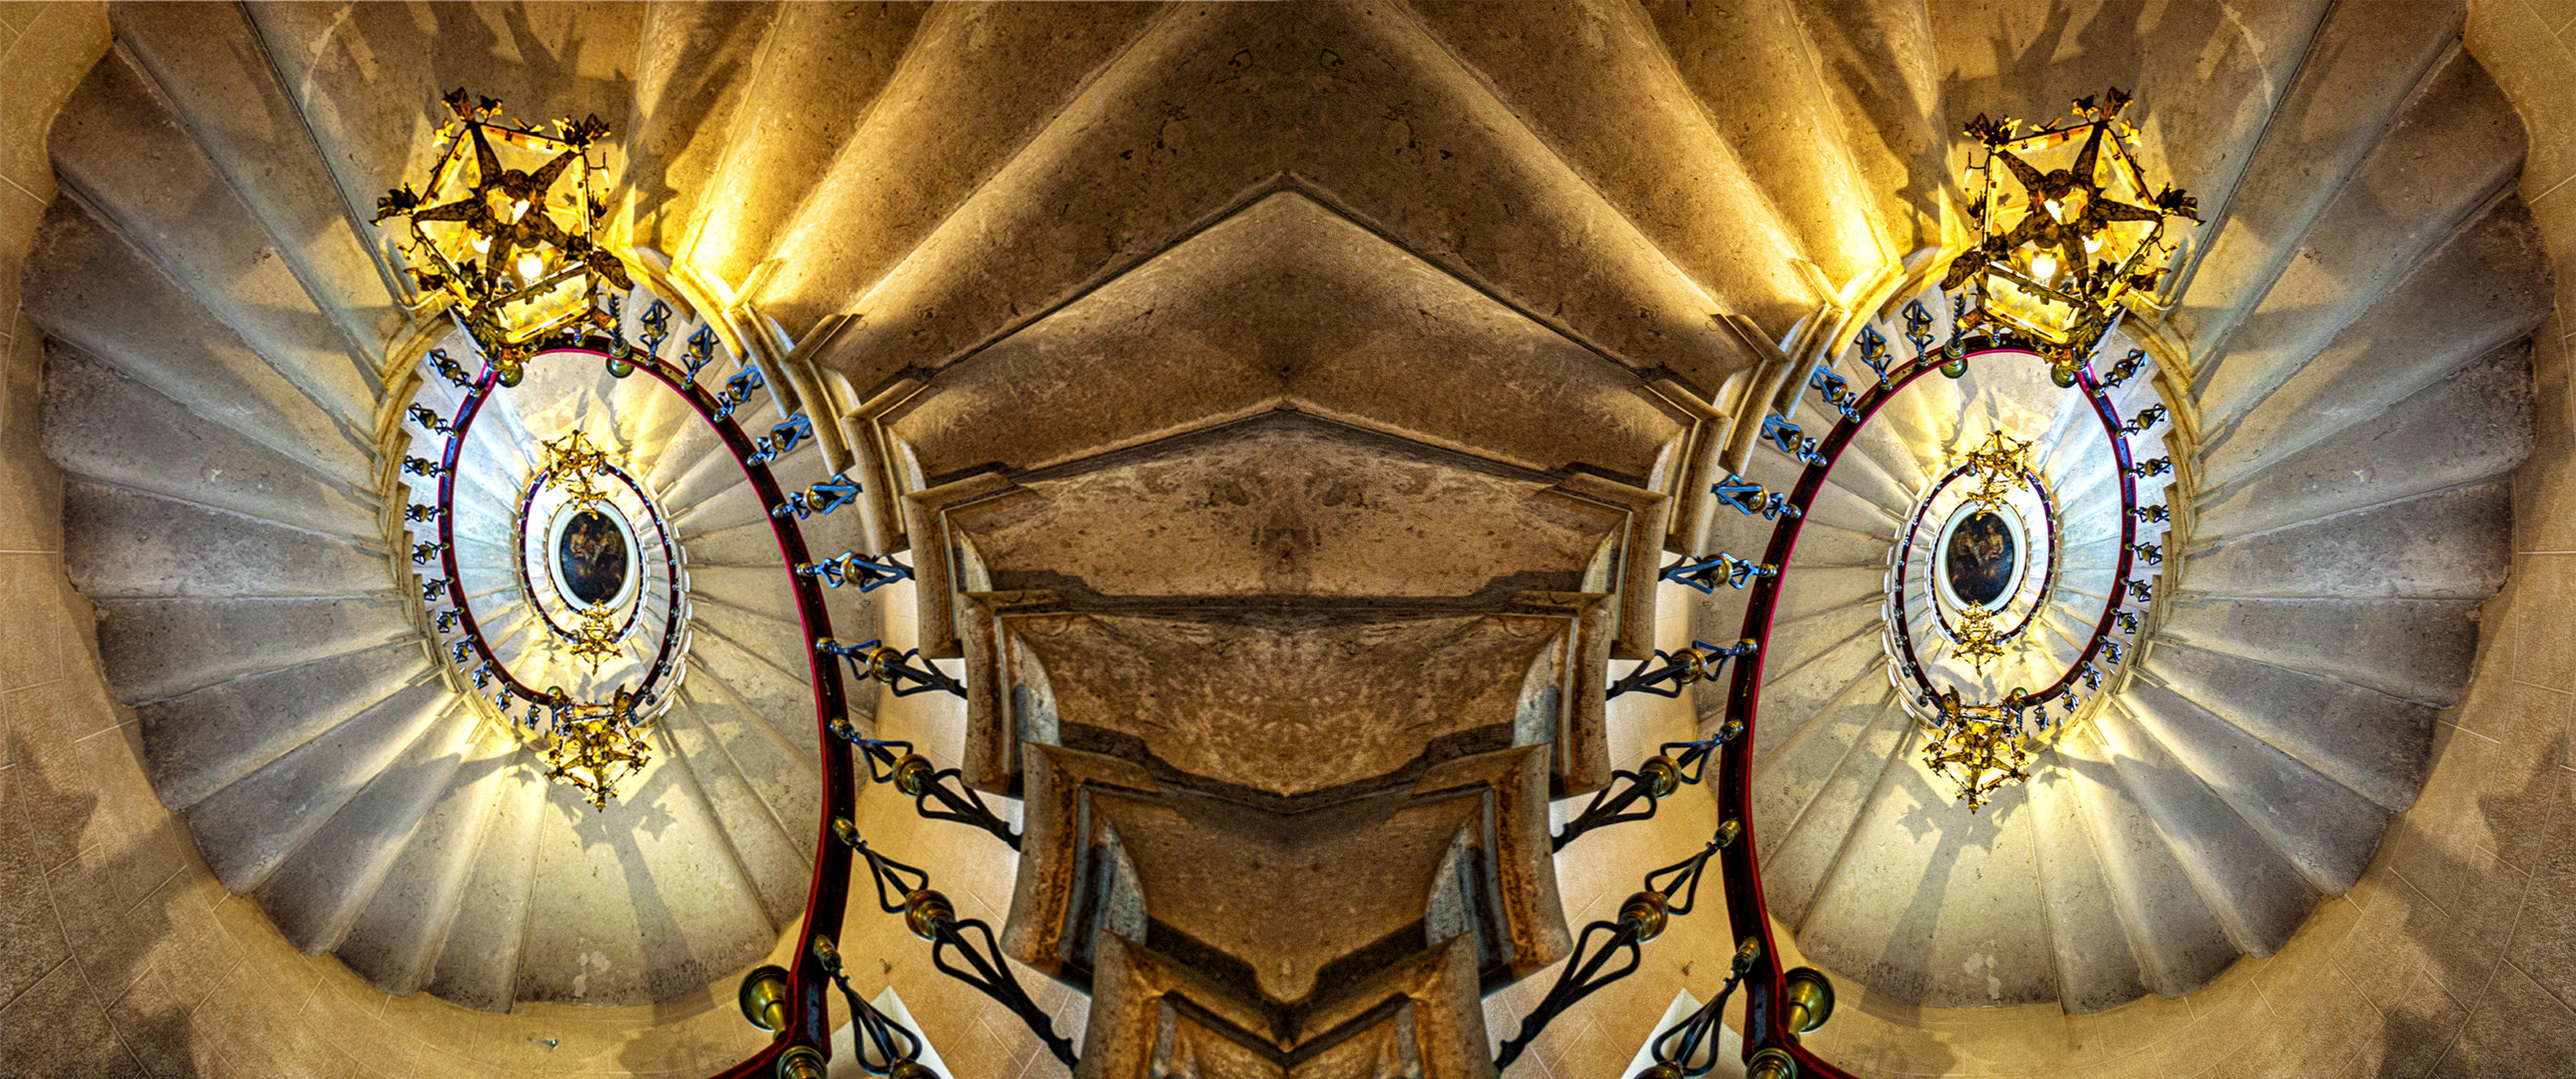 Die Wendeltreppe im Schloss Duino, gespiegelt